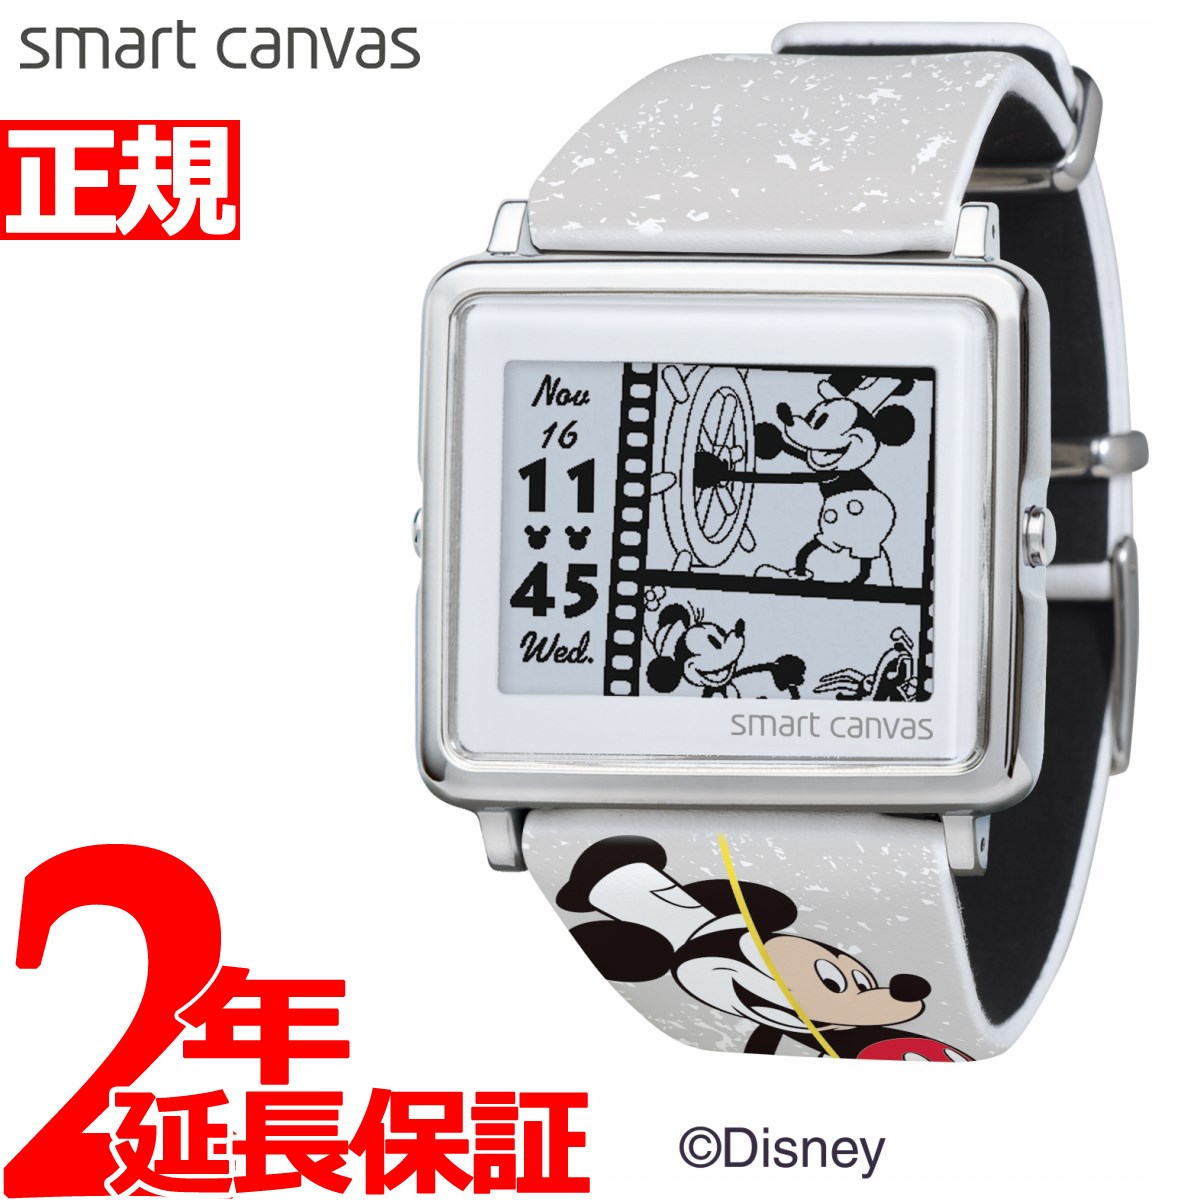 エプソン スマートキャンバス Epson Smart Canvas ディズニー ミッキー90周年デザイン Mickey Mouse 限定モデル 腕時計 メンズ レディース W1 Dy3011l